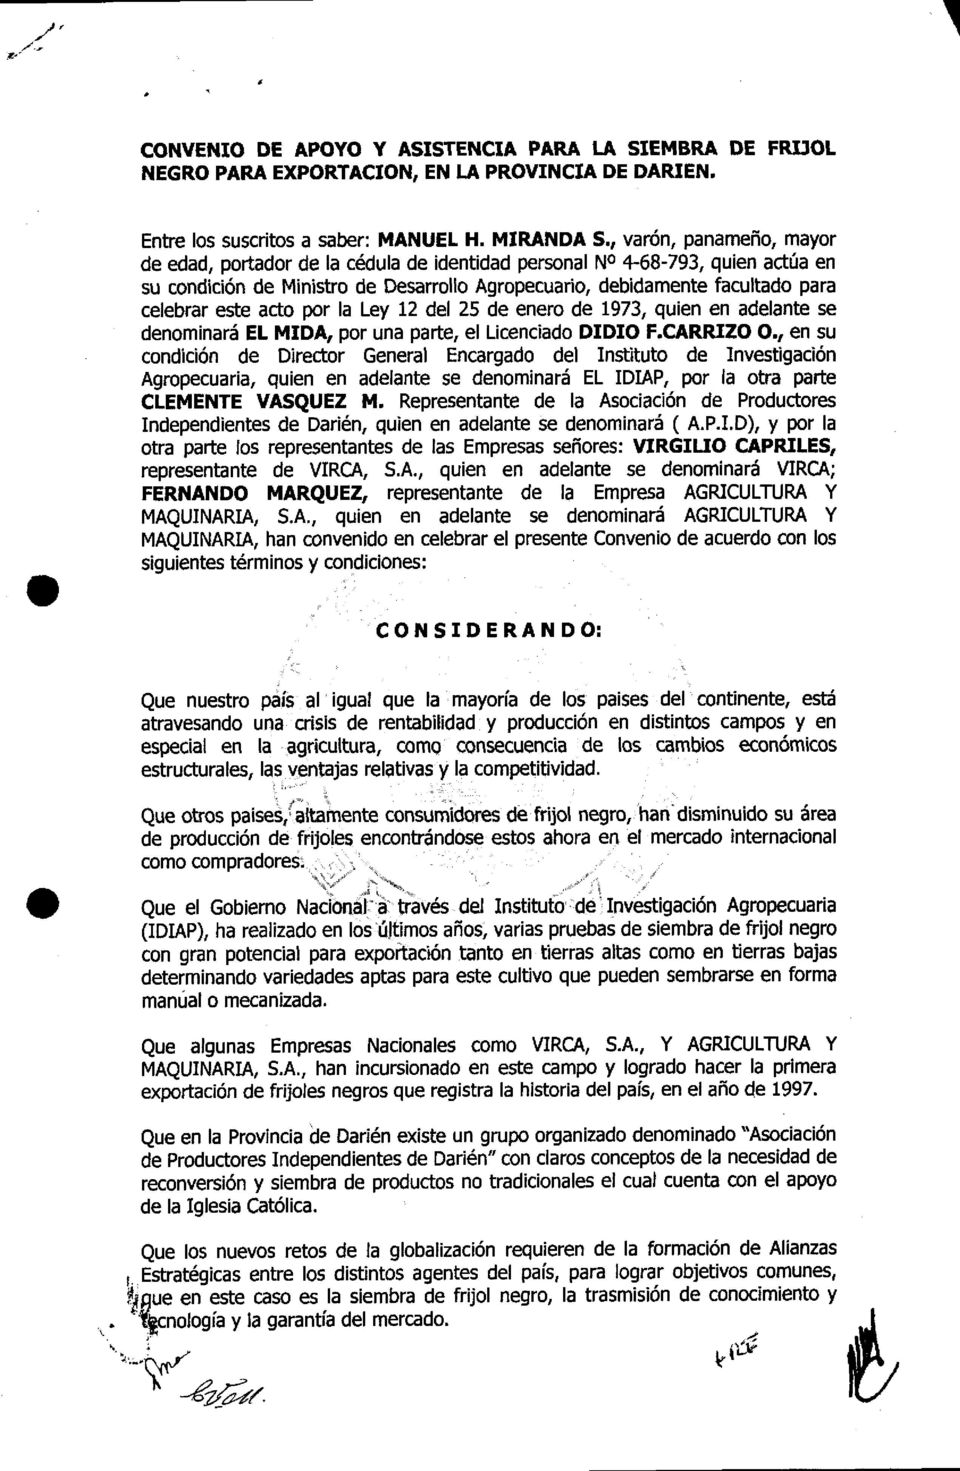 acto por la Le,/ 12 del 25 de enero de 1973, quien en adelante se denominará EL MIDA, por una parte, el Licenciado DIDIO F.CARRIZO.